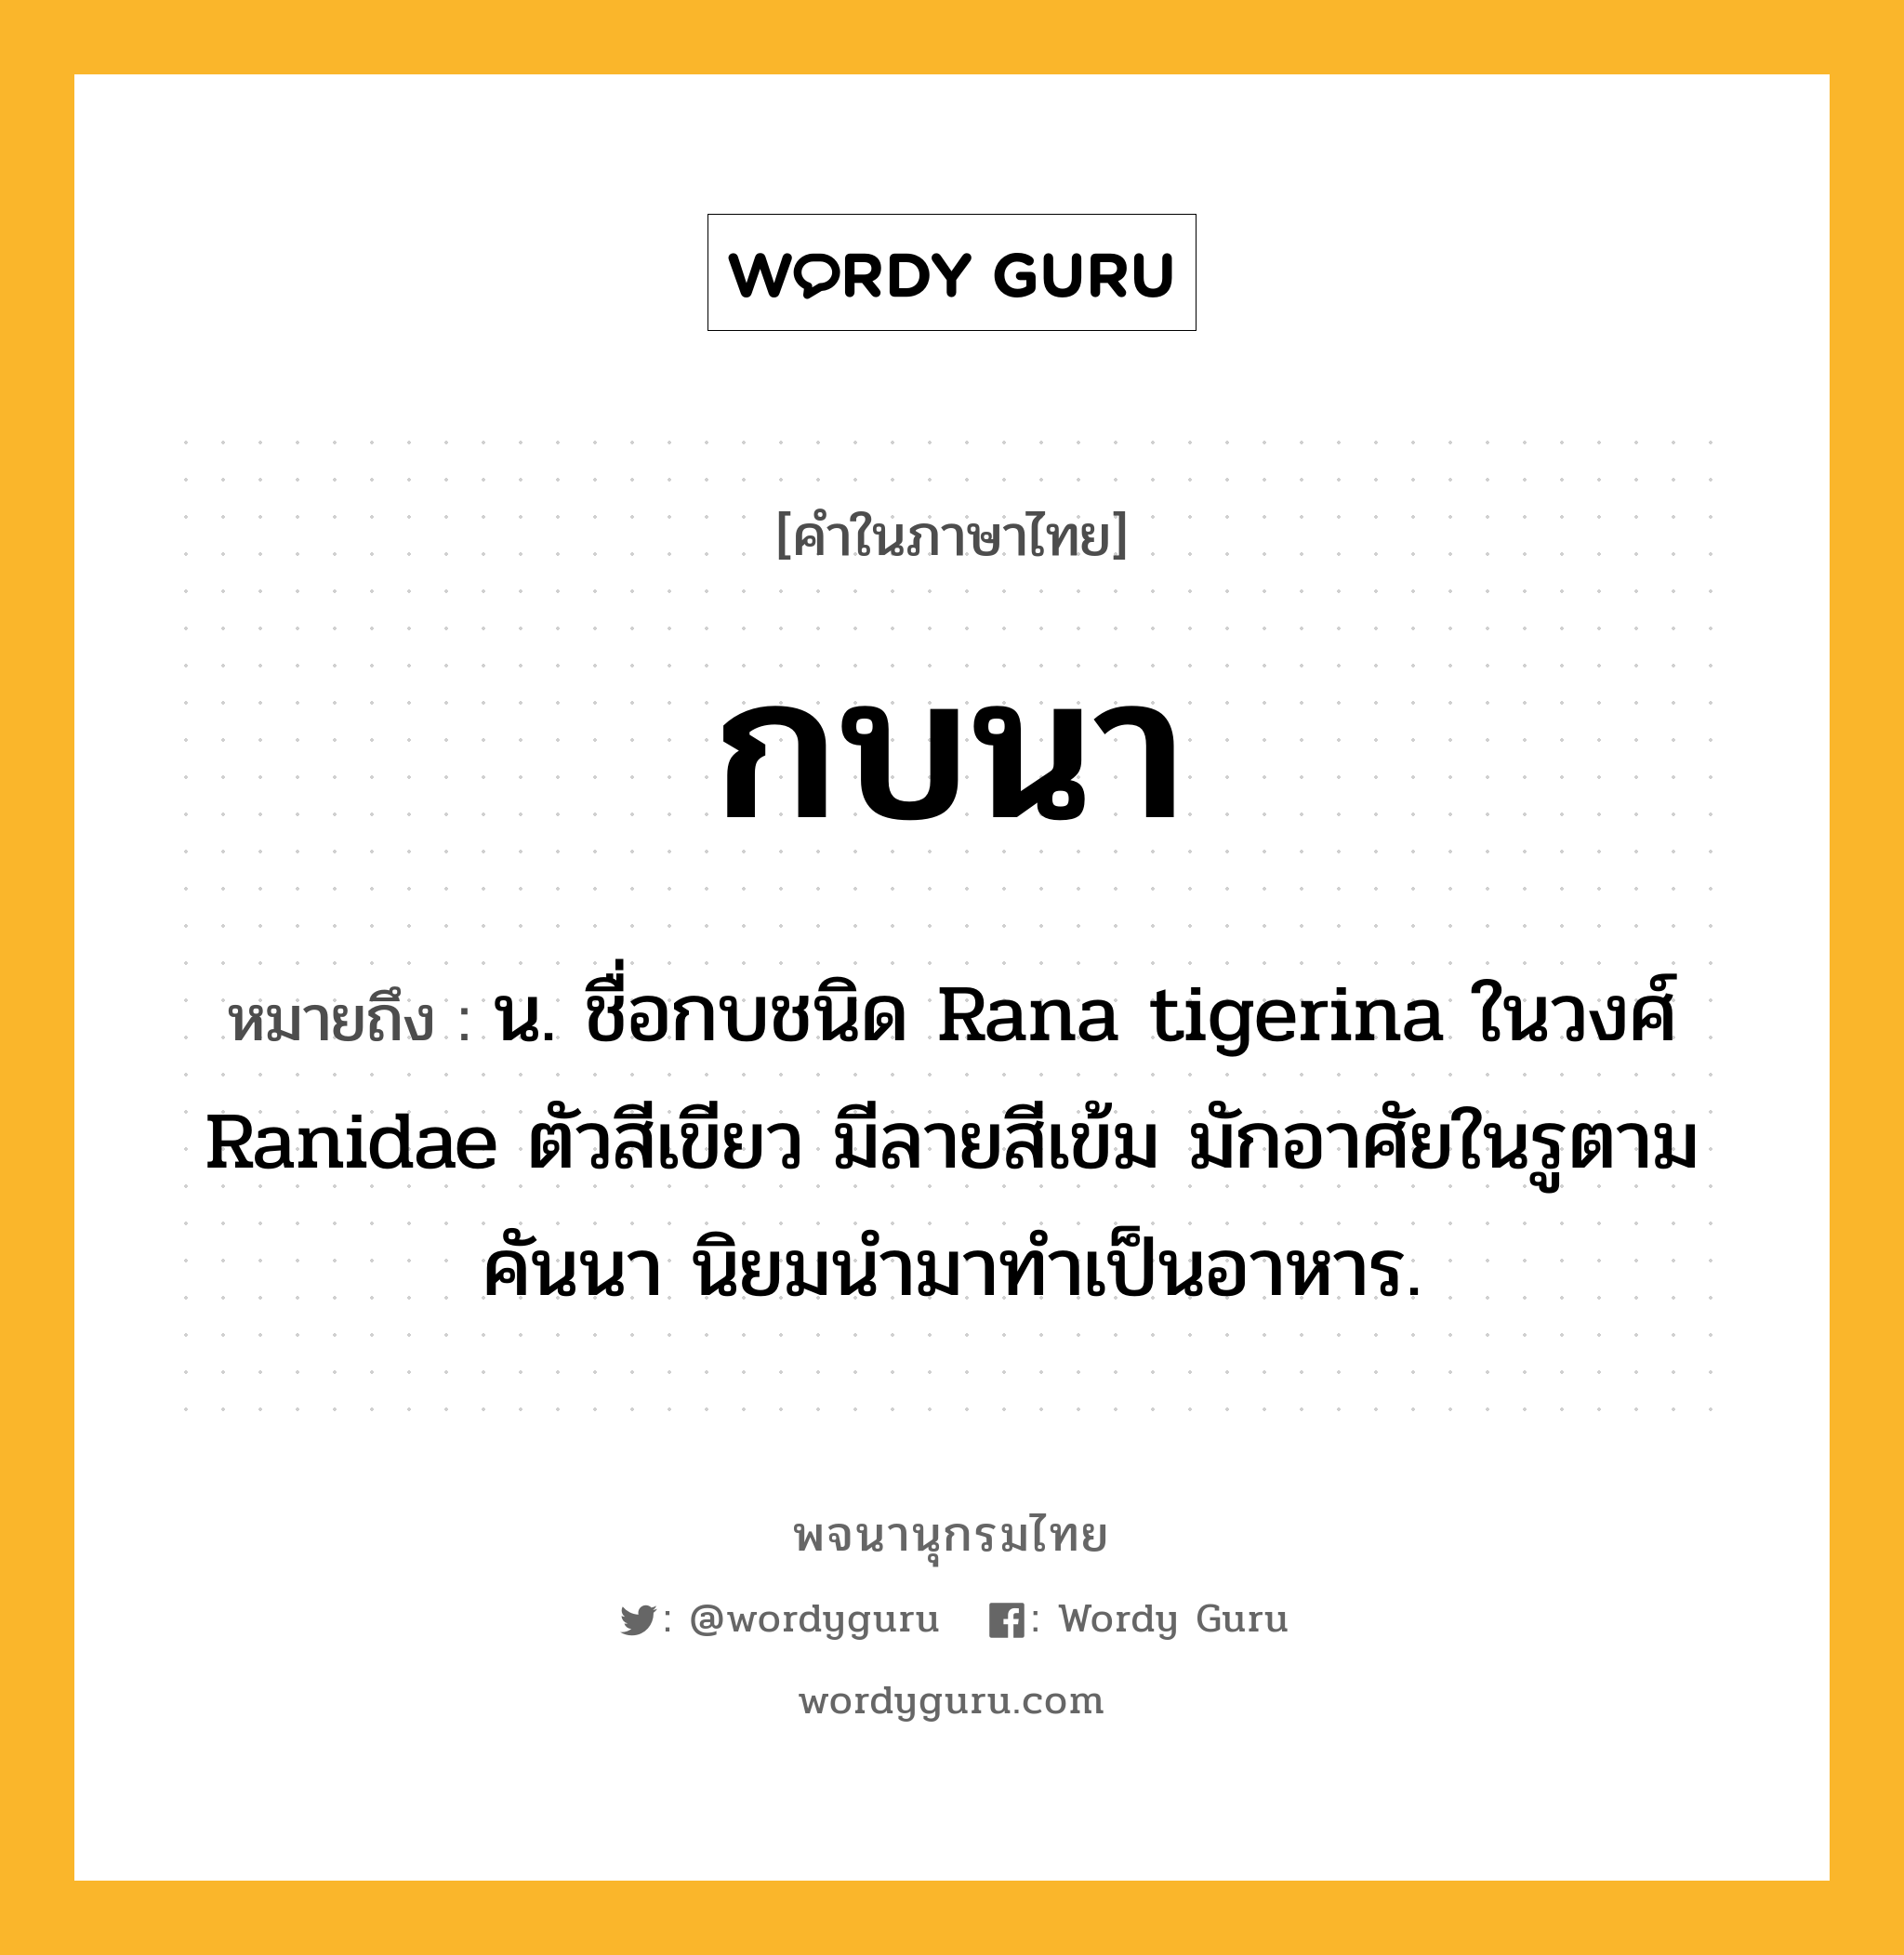 กบนา ความหมาย หมายถึงอะไร?, คำในภาษาไทย กบนา หมายถึง น. ชื่อกบชนิด Rana tigerina ในวงศ์ Ranidae ตัวสีเขียว มีลายสีเข้ม มักอาศัยในรูตามคันนา นิยมนำมาทำเป็นอาหาร.